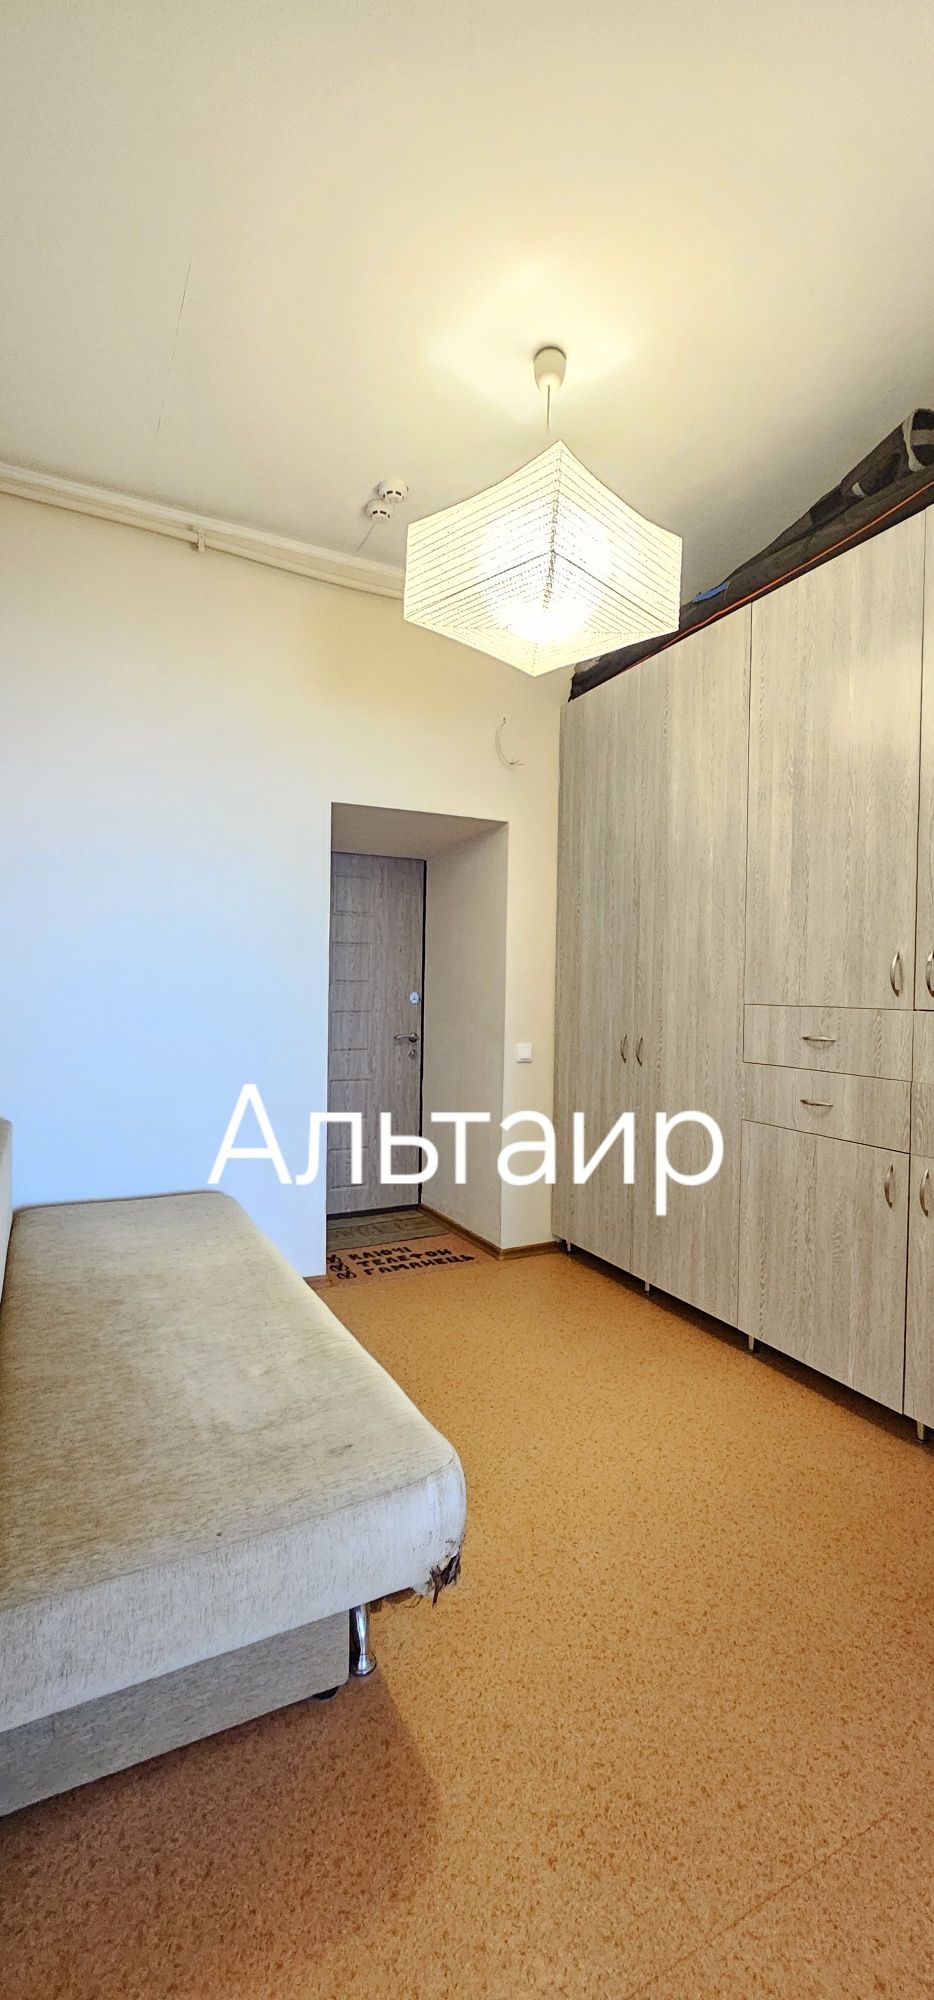 Продам квартиру 92м в новострое ЖК Алексеевский Победы 66.L